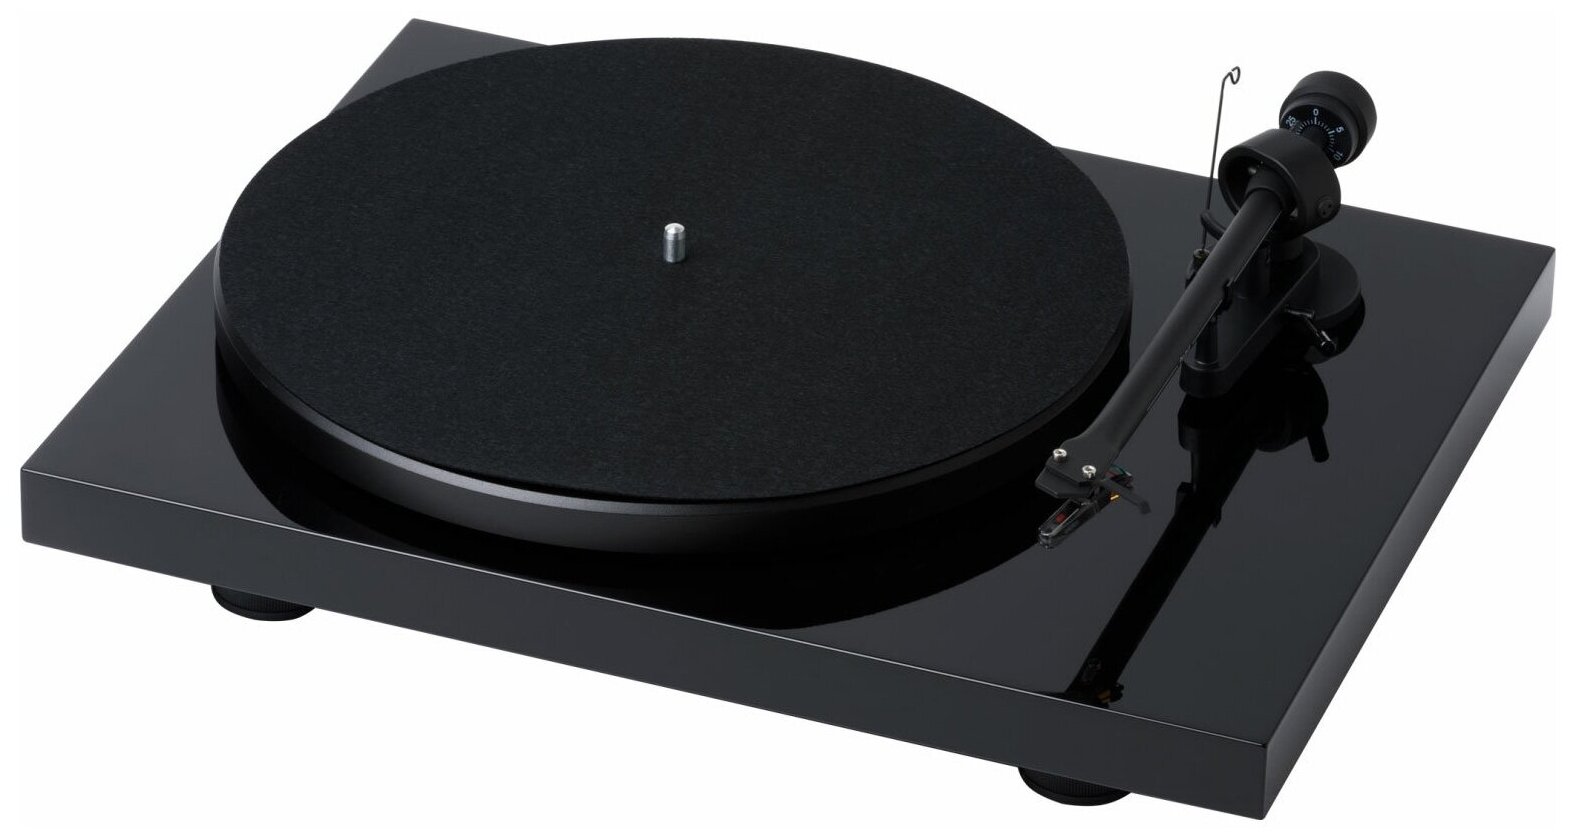   PRO-JECT Debut RecordMaster II HG Black OM5e